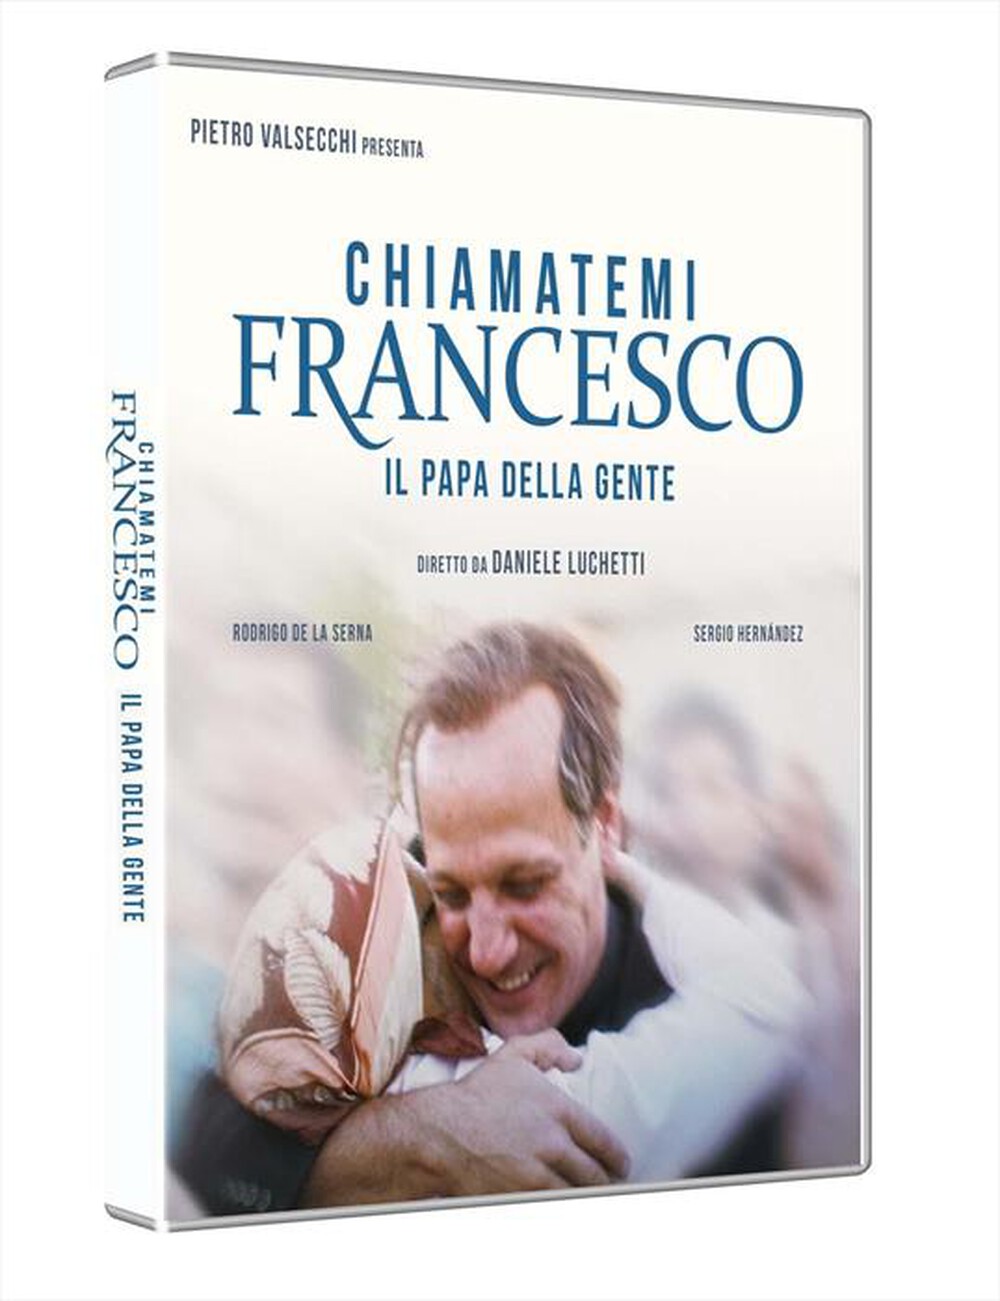 "UNIVERSAL PICTURES - Chiamatemi Francesco, Il Papa Della Gente - "